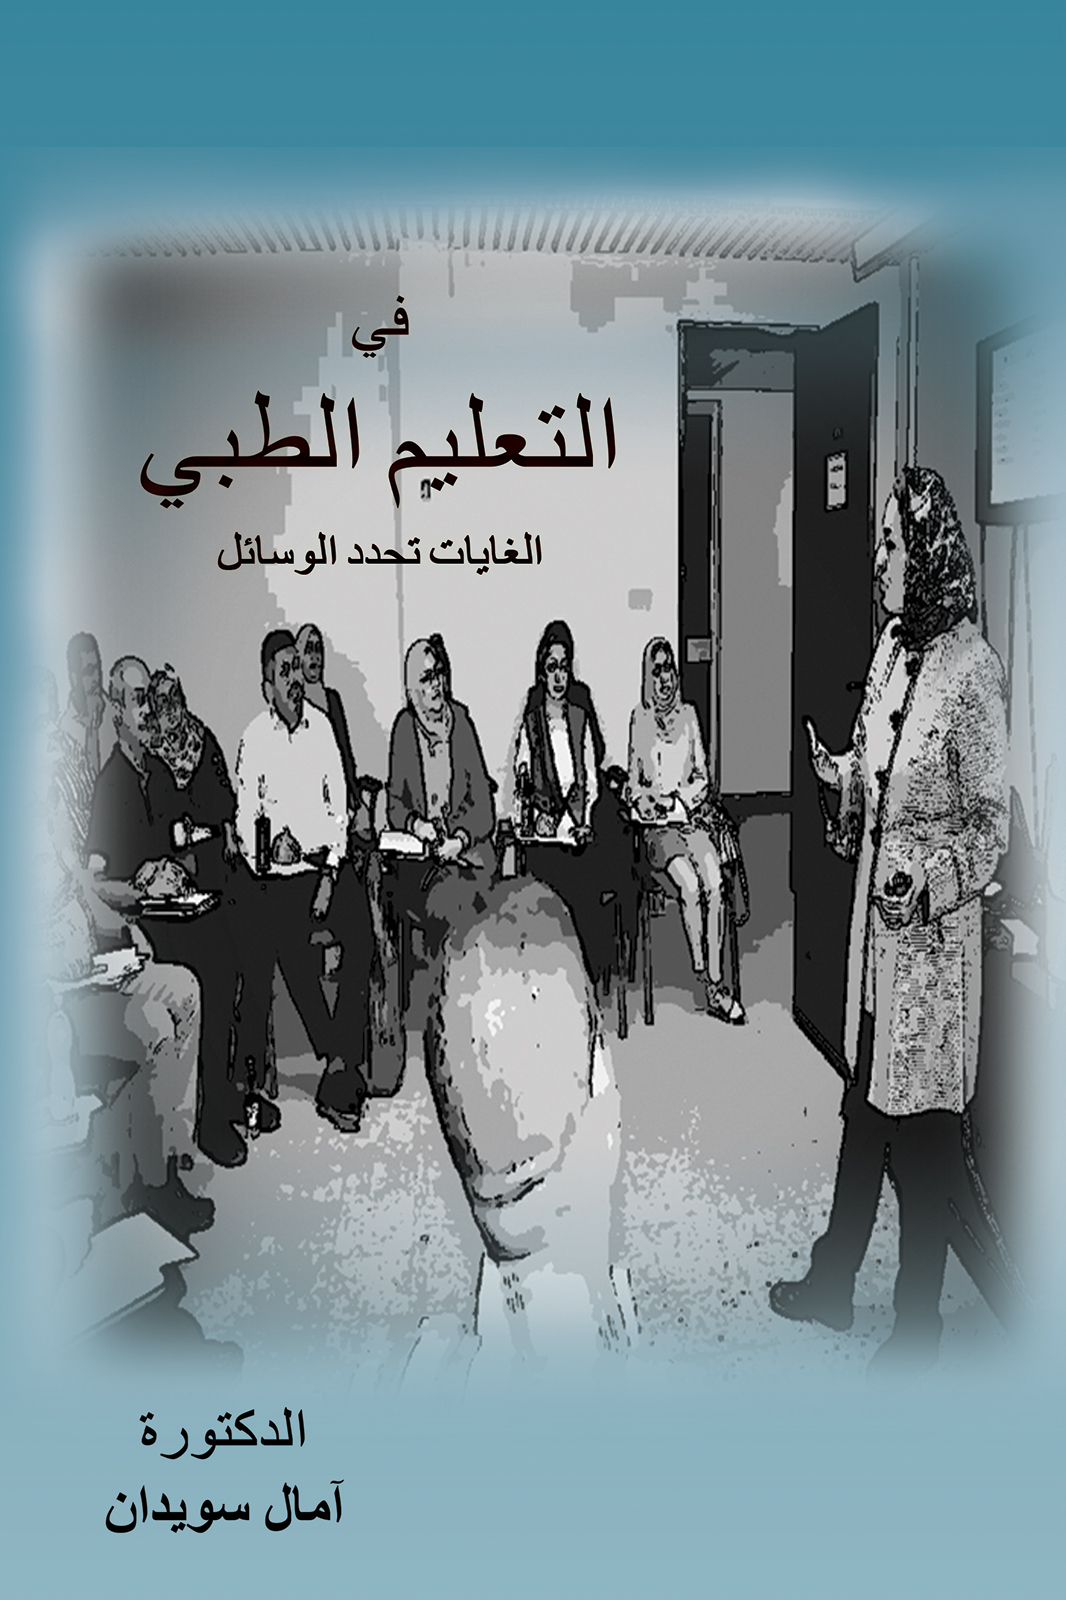 This image is the cover for the book في التعليم الطبي الغايات تحدد الوسائل